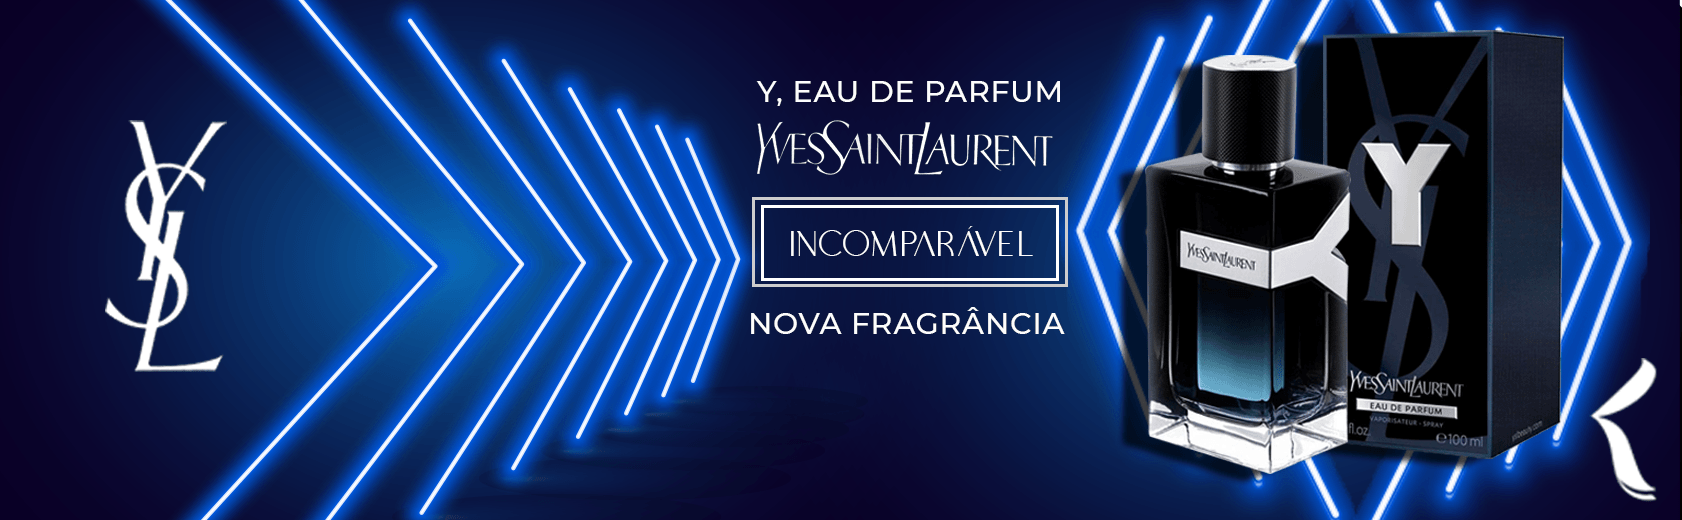 Yves Saint Laurent | Y Eau de Parfum Nova Fragrância🎤